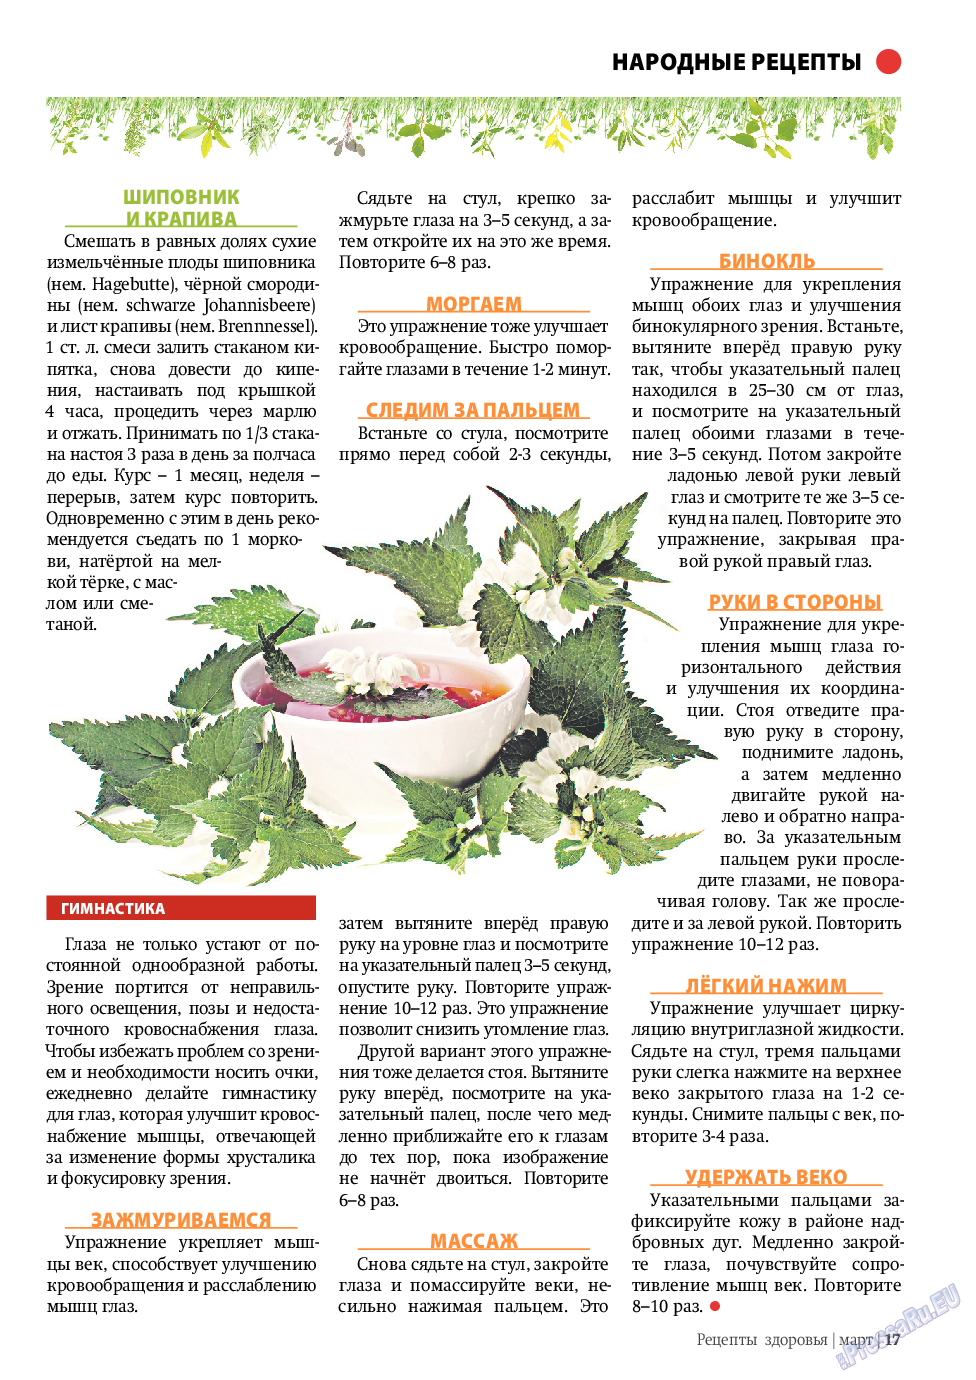 Рецепты здоровья, журнал. 2011 №3 стр.17